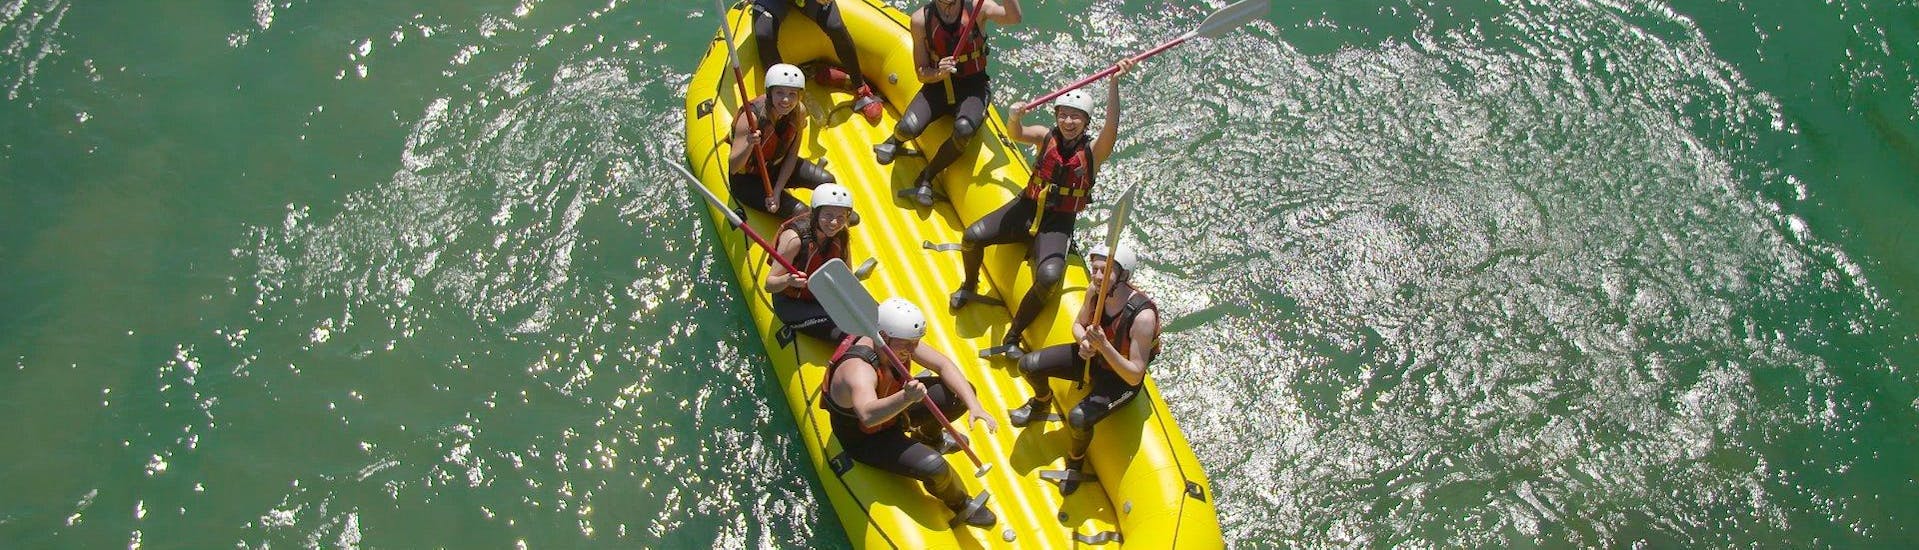 Día de aventura con rafting y barranquismo en Bled.